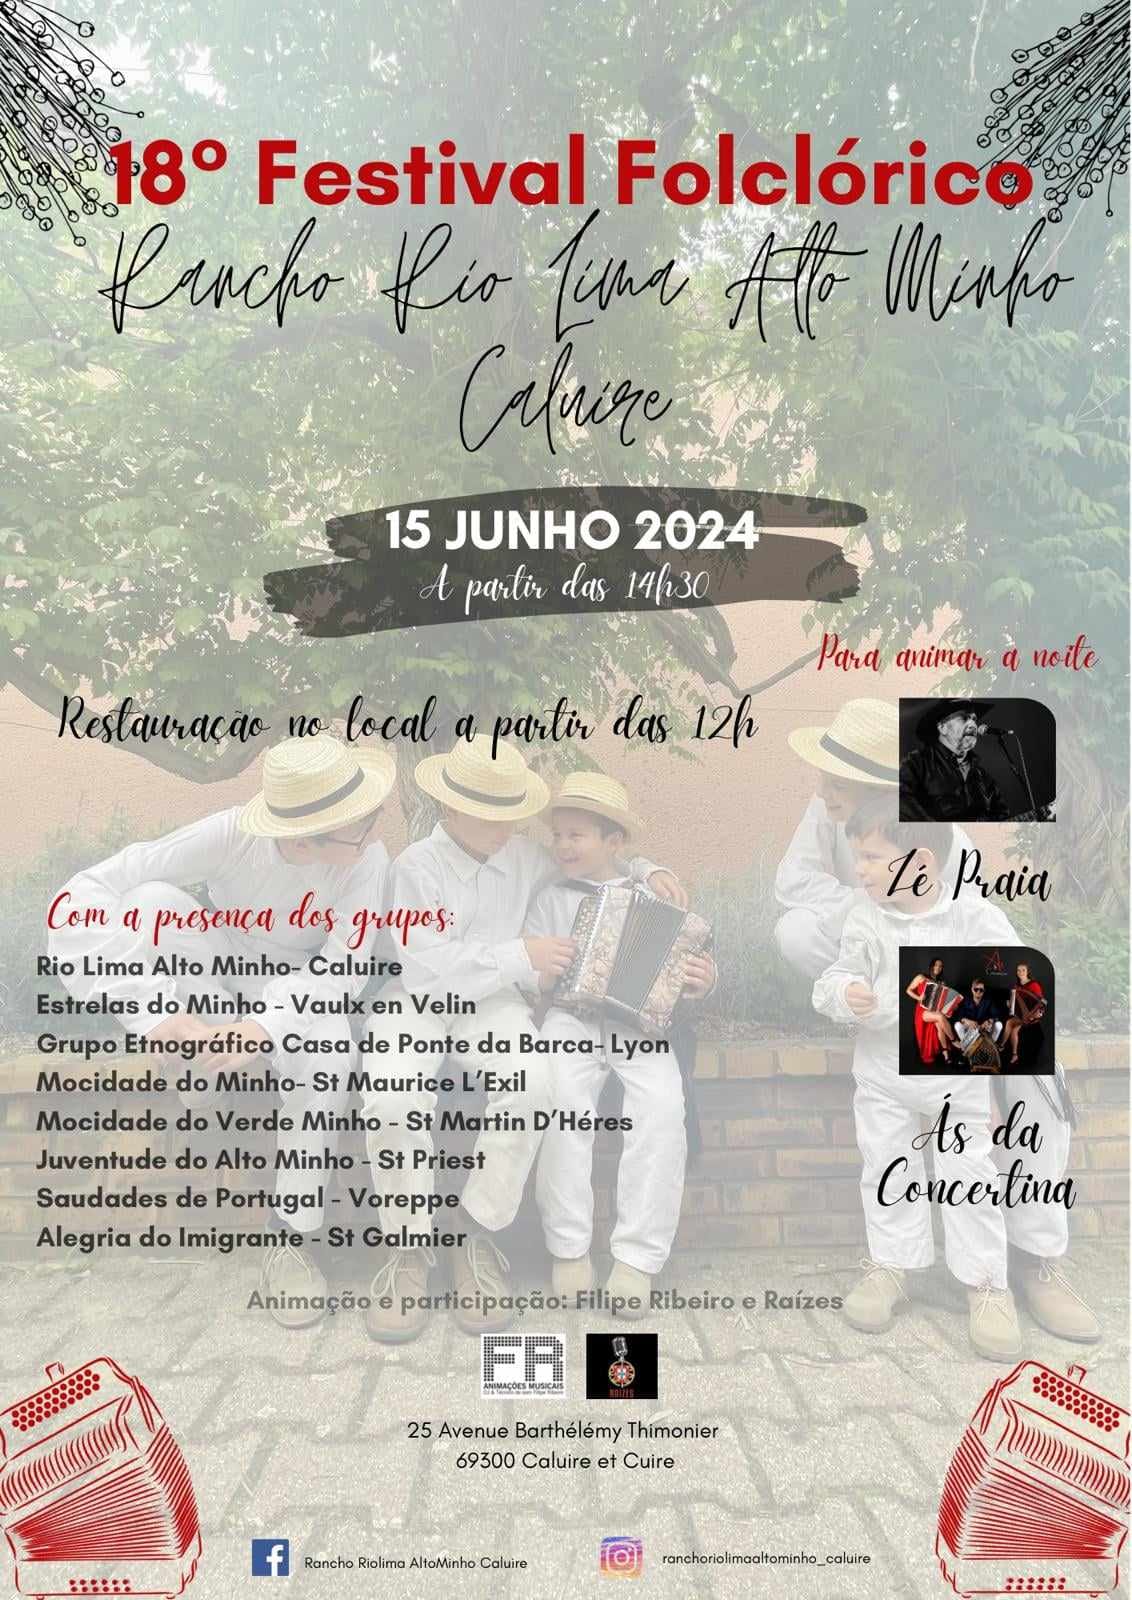 18° Festival Folclorico - 15 Junho 2024 -15h- Rio Lima Alto Minho de Caluire - na noite "As da Concertina" - 20h